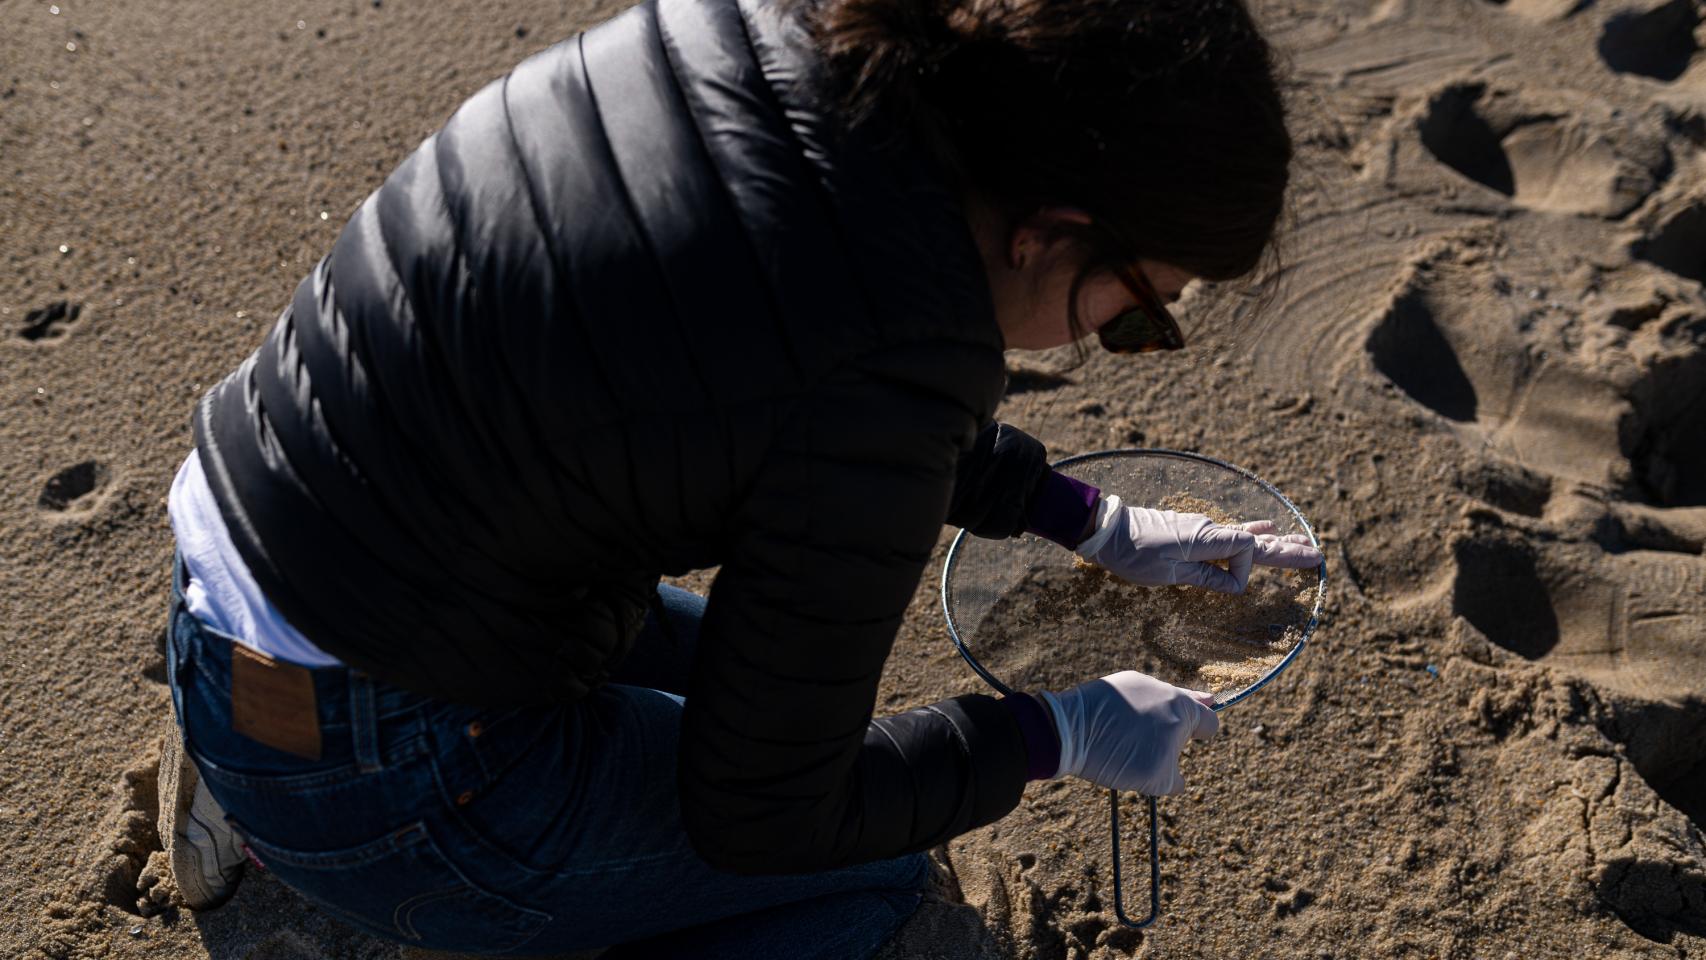 Voluntarios hacen una recogida de 'pellets' de la arena en A Coruña.